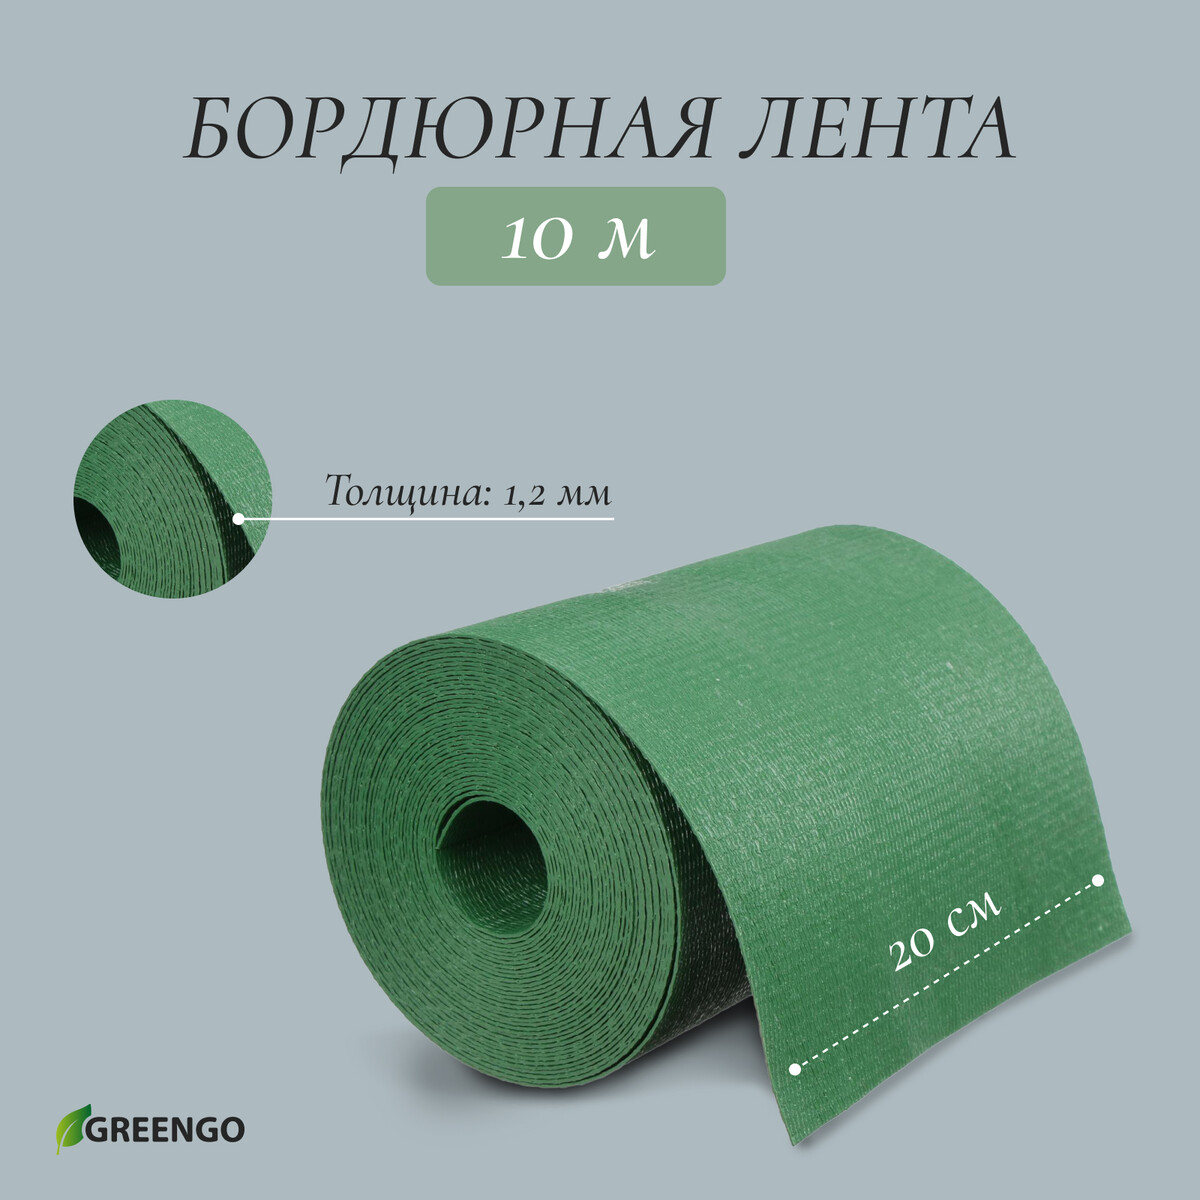 Лента бордюрная, 0.2 × 10 м, толщина 1.2 мм, пластиковая, зеленая, greengo